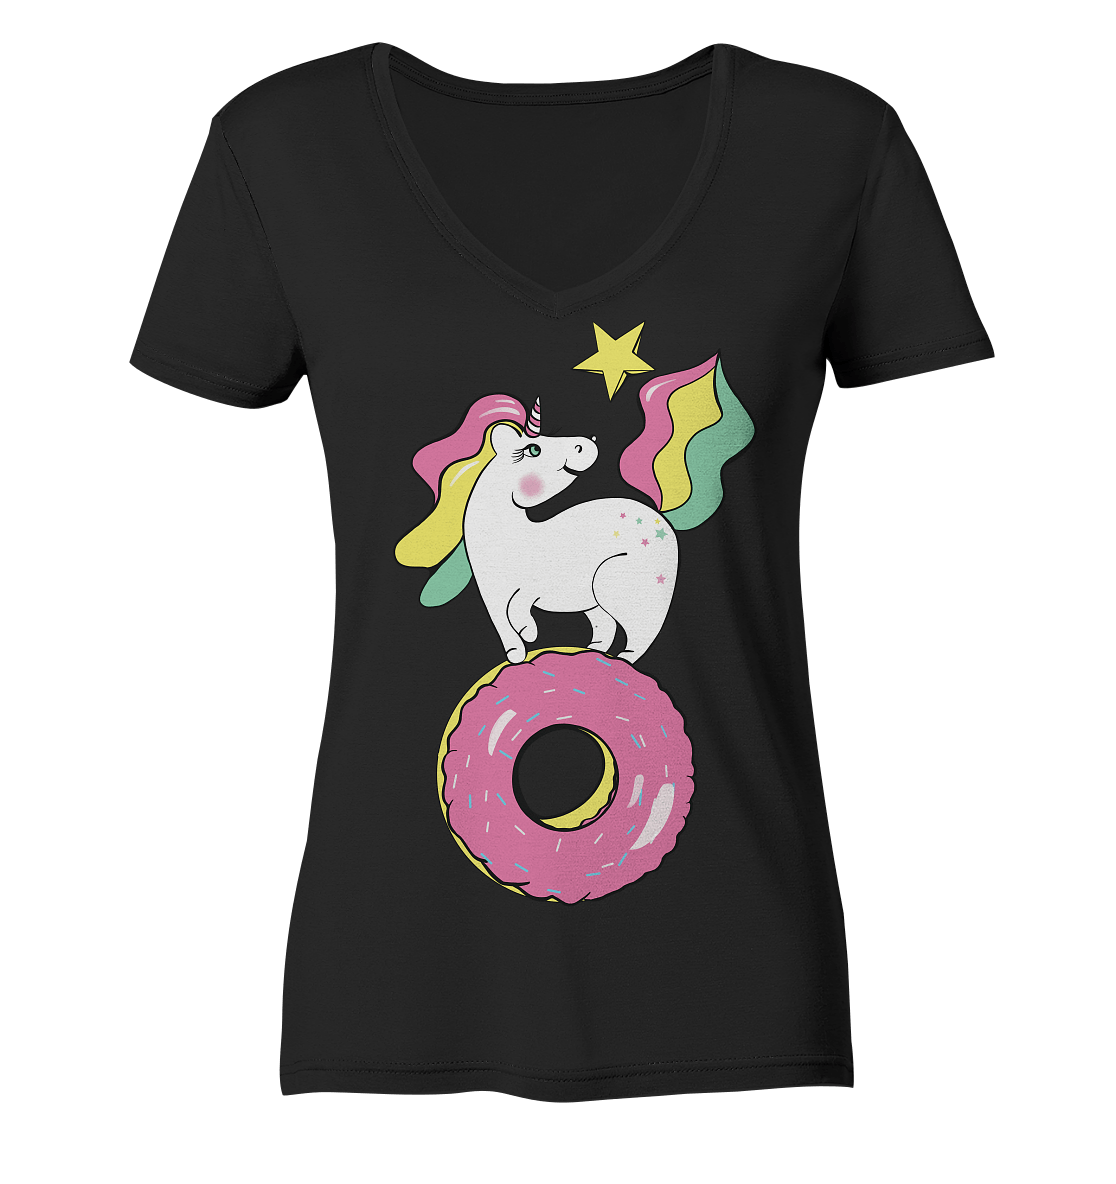 einhorn tshirt in schwarz einhorn auf donut t shirt unicorn 